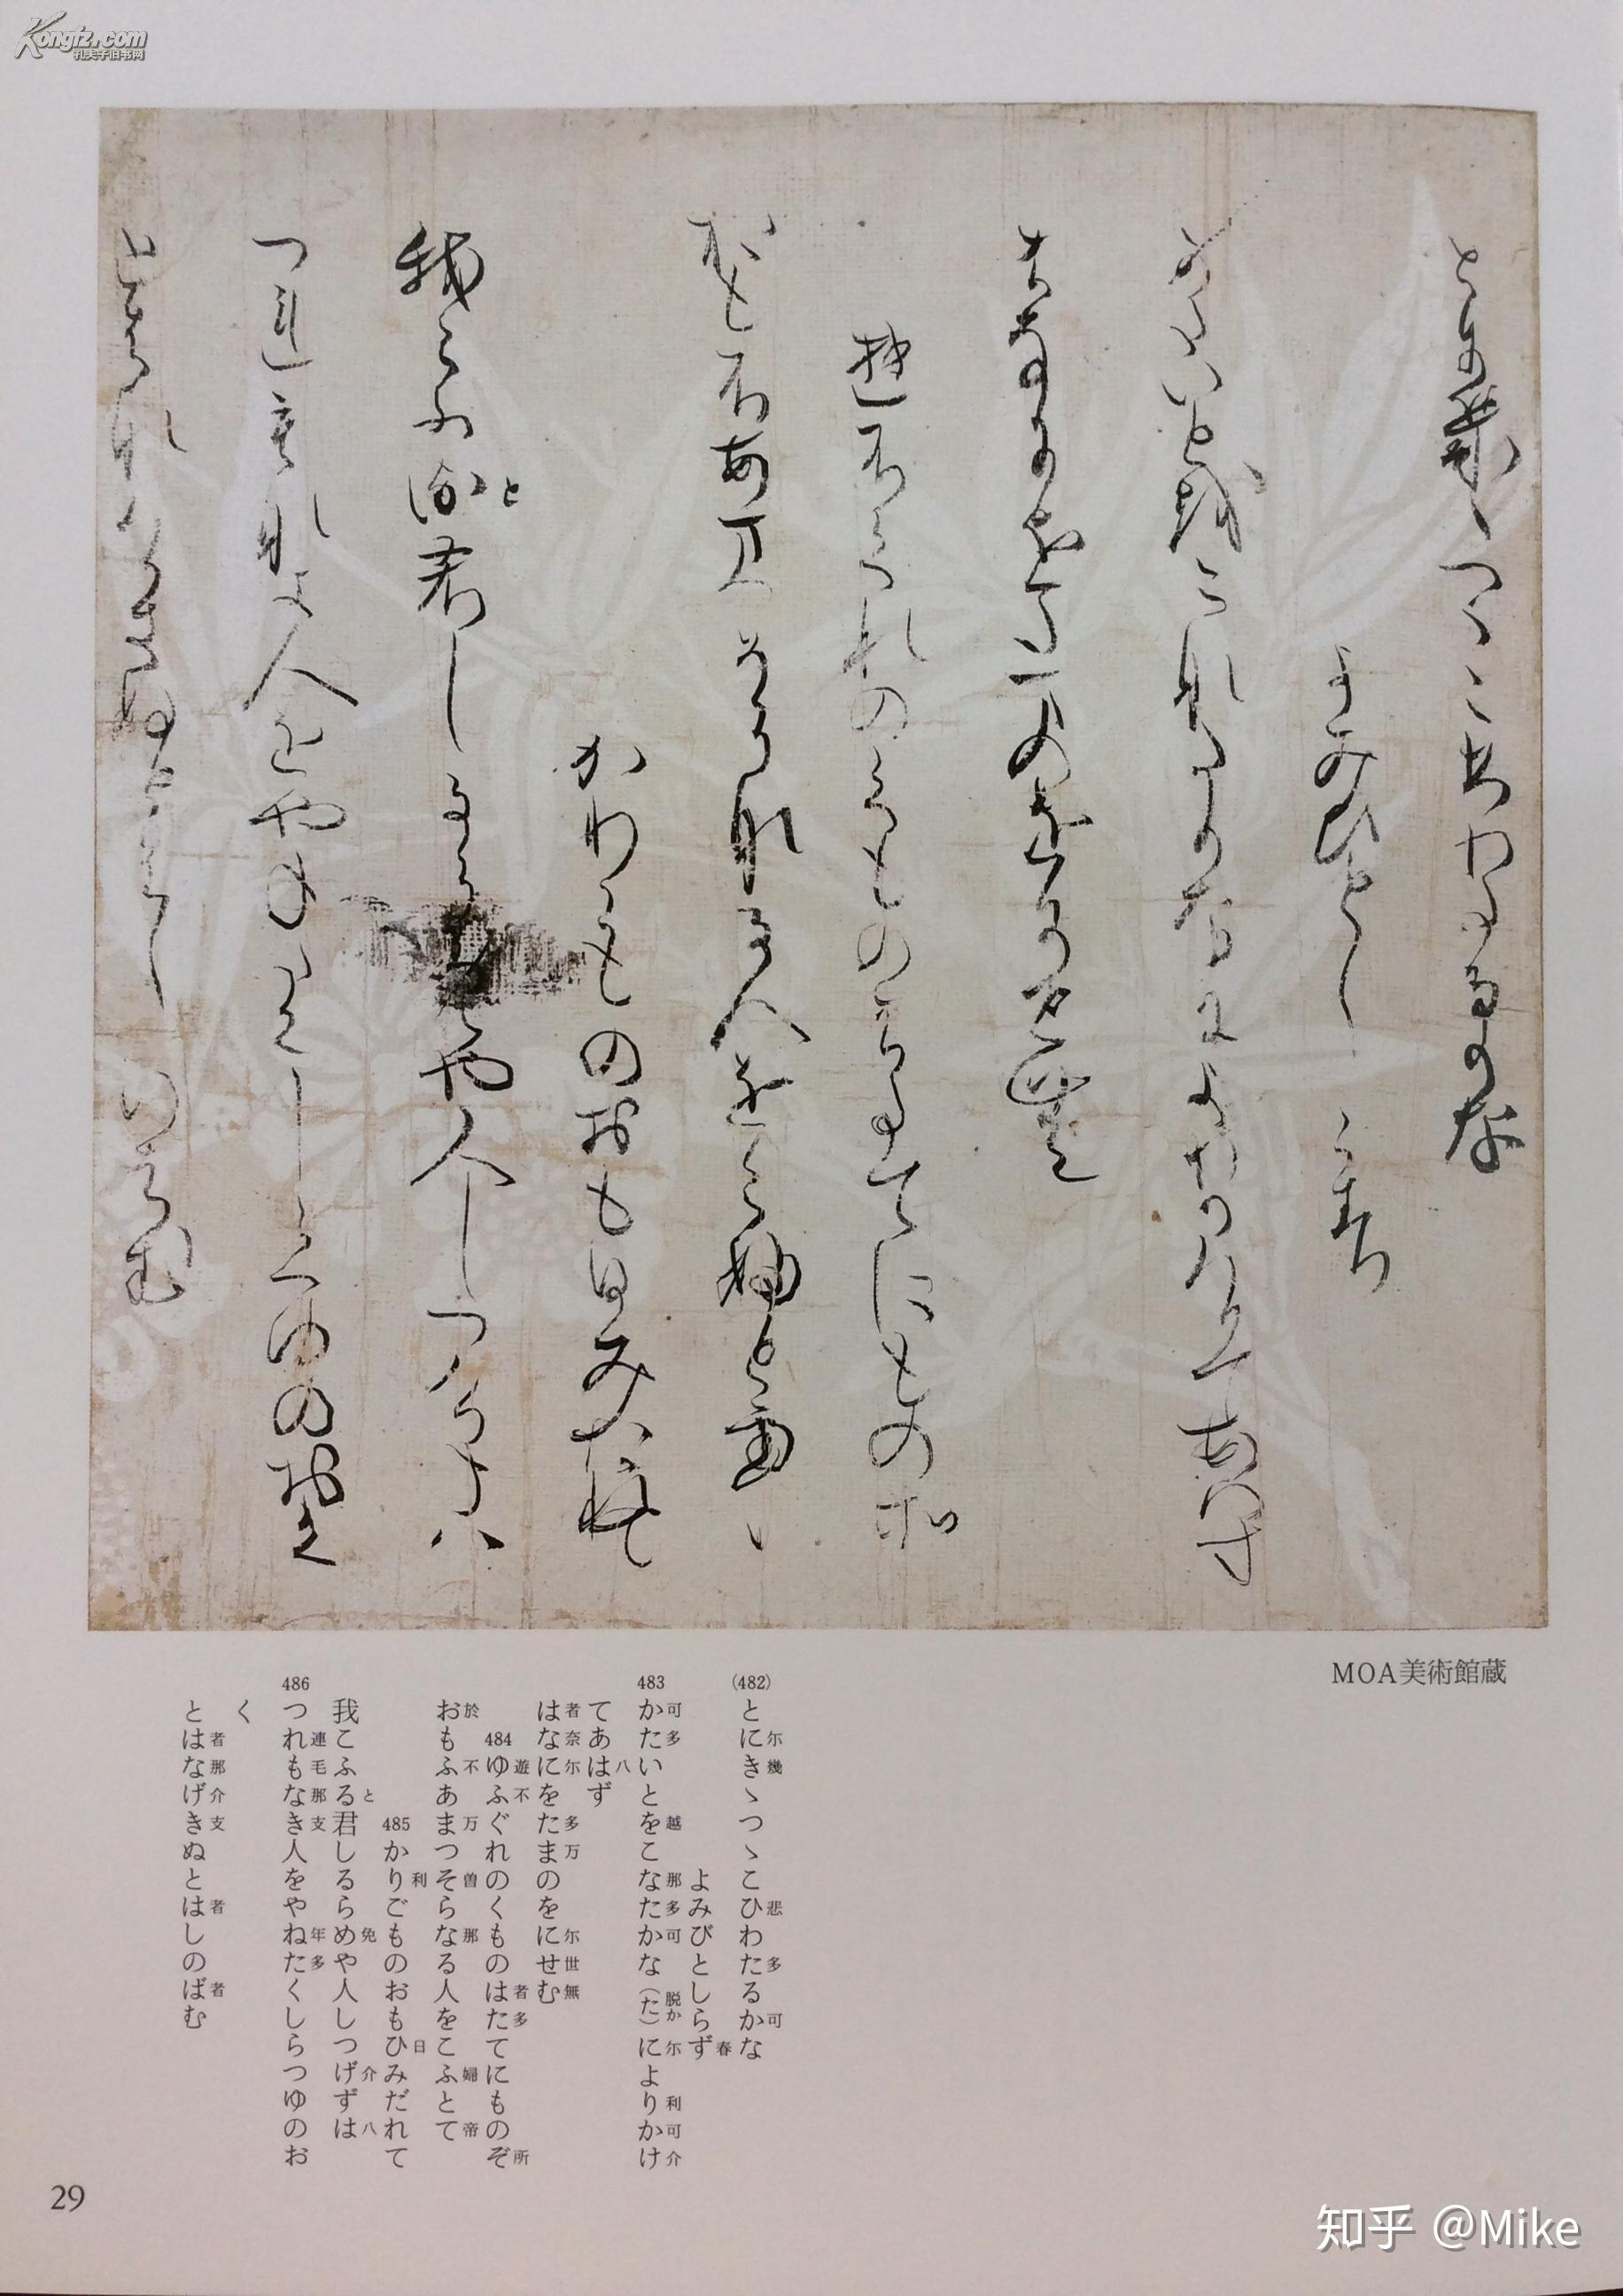 可否推荐鉴赏一下某些著名的日文书法作品?